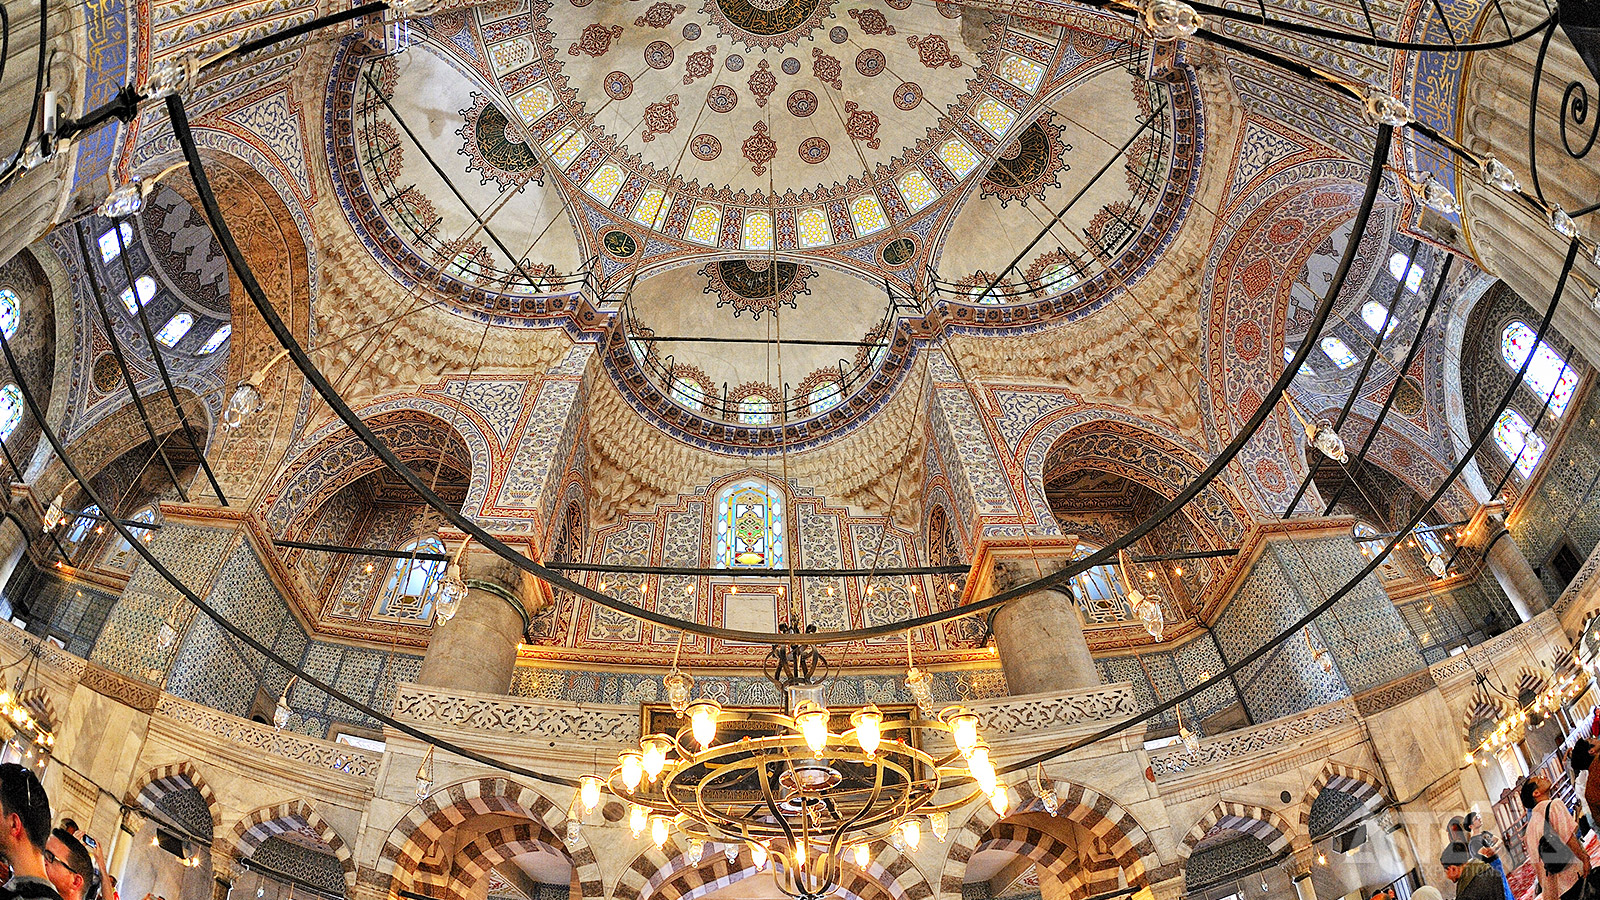 Het interieur van de Sultan Ahmet-moskee is versierd met twintigduizend tegeltjes in blauw, groen en roodbruin